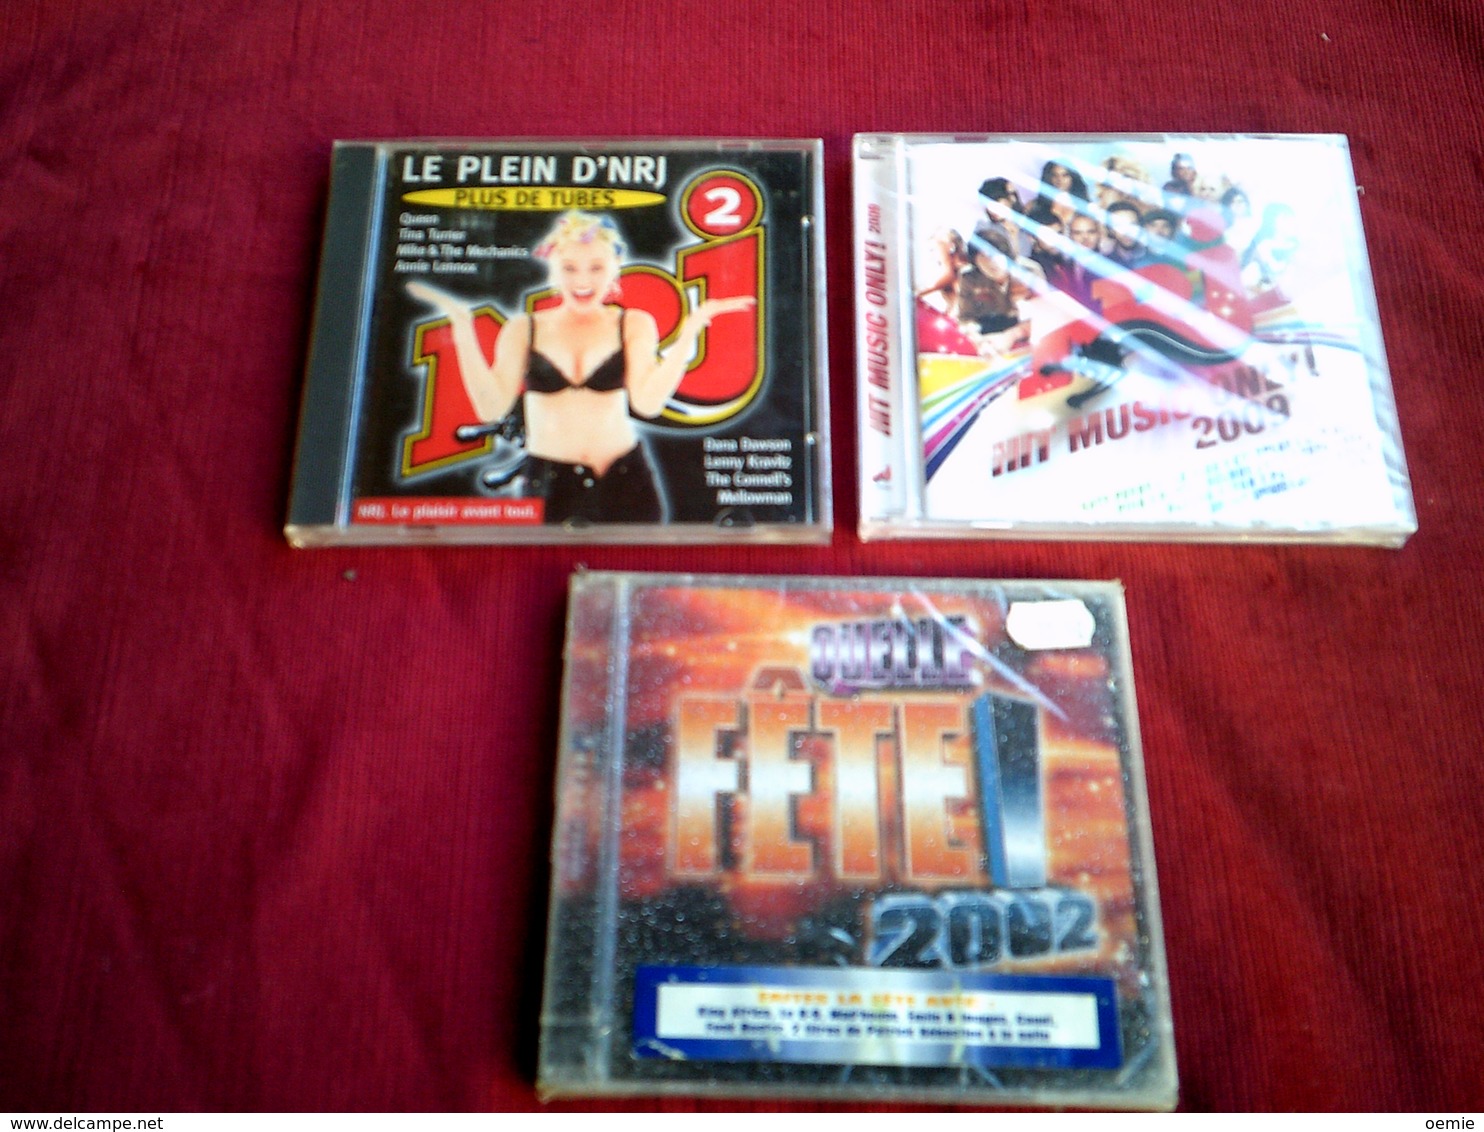 COLLECTION DE 3 CD ALBUM  DE COMPILATION  ° NRJ   ° HIT MUSIC ONLY 2009  DOUBLE CD 33 TITRES+ NRJ 2 + FETE 2002 - Collezioni